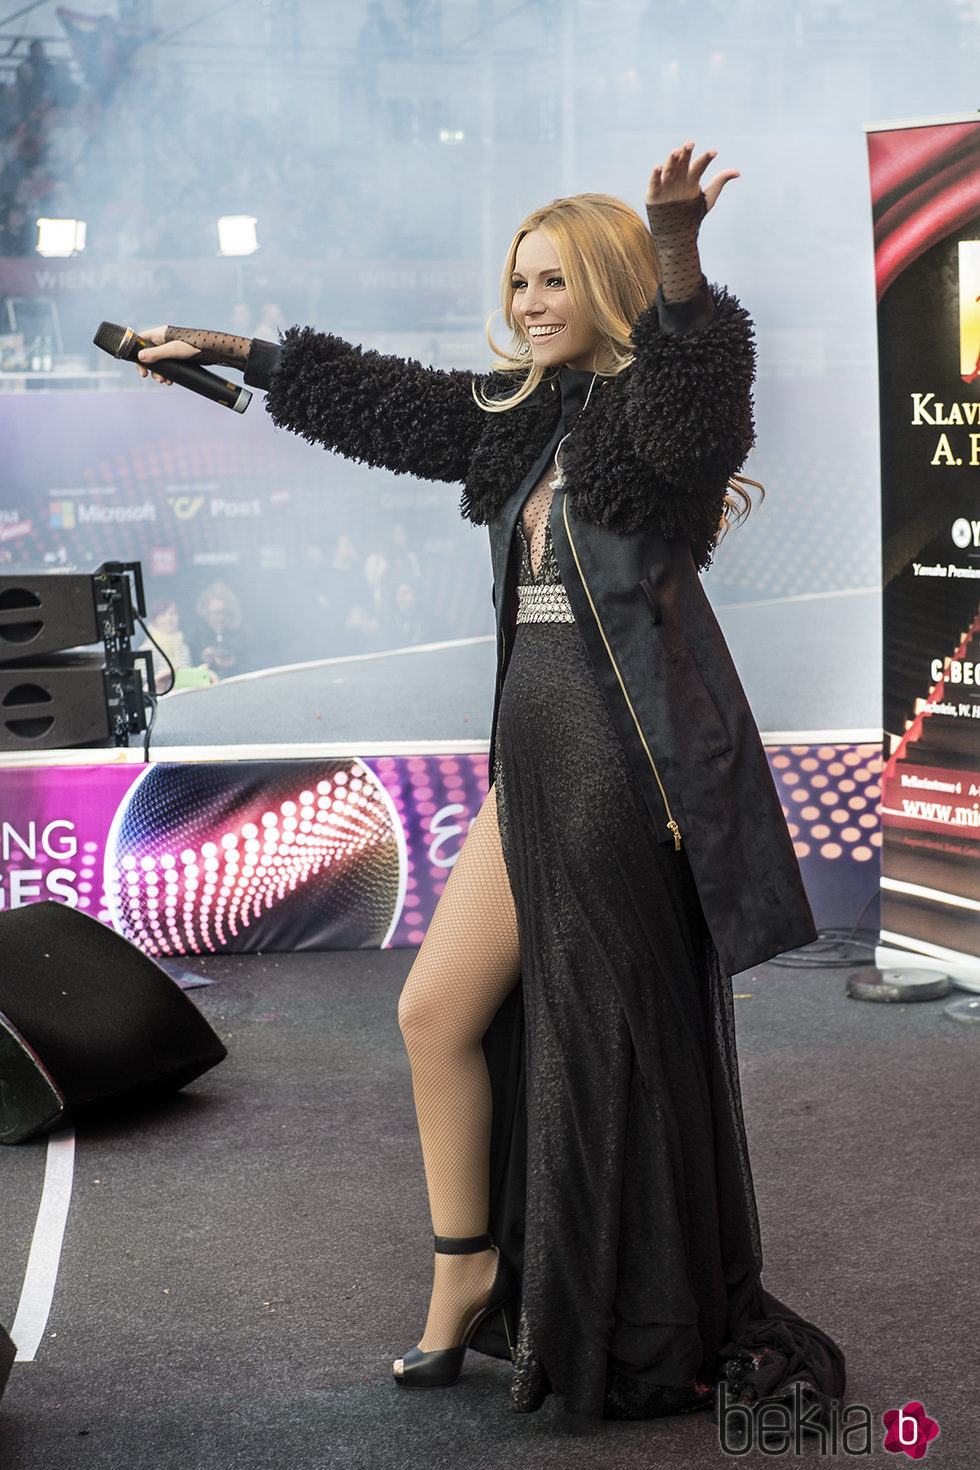 Edurne interpreta 'Amanecer' en la Big Five Party celebrada en el Eurovision Village